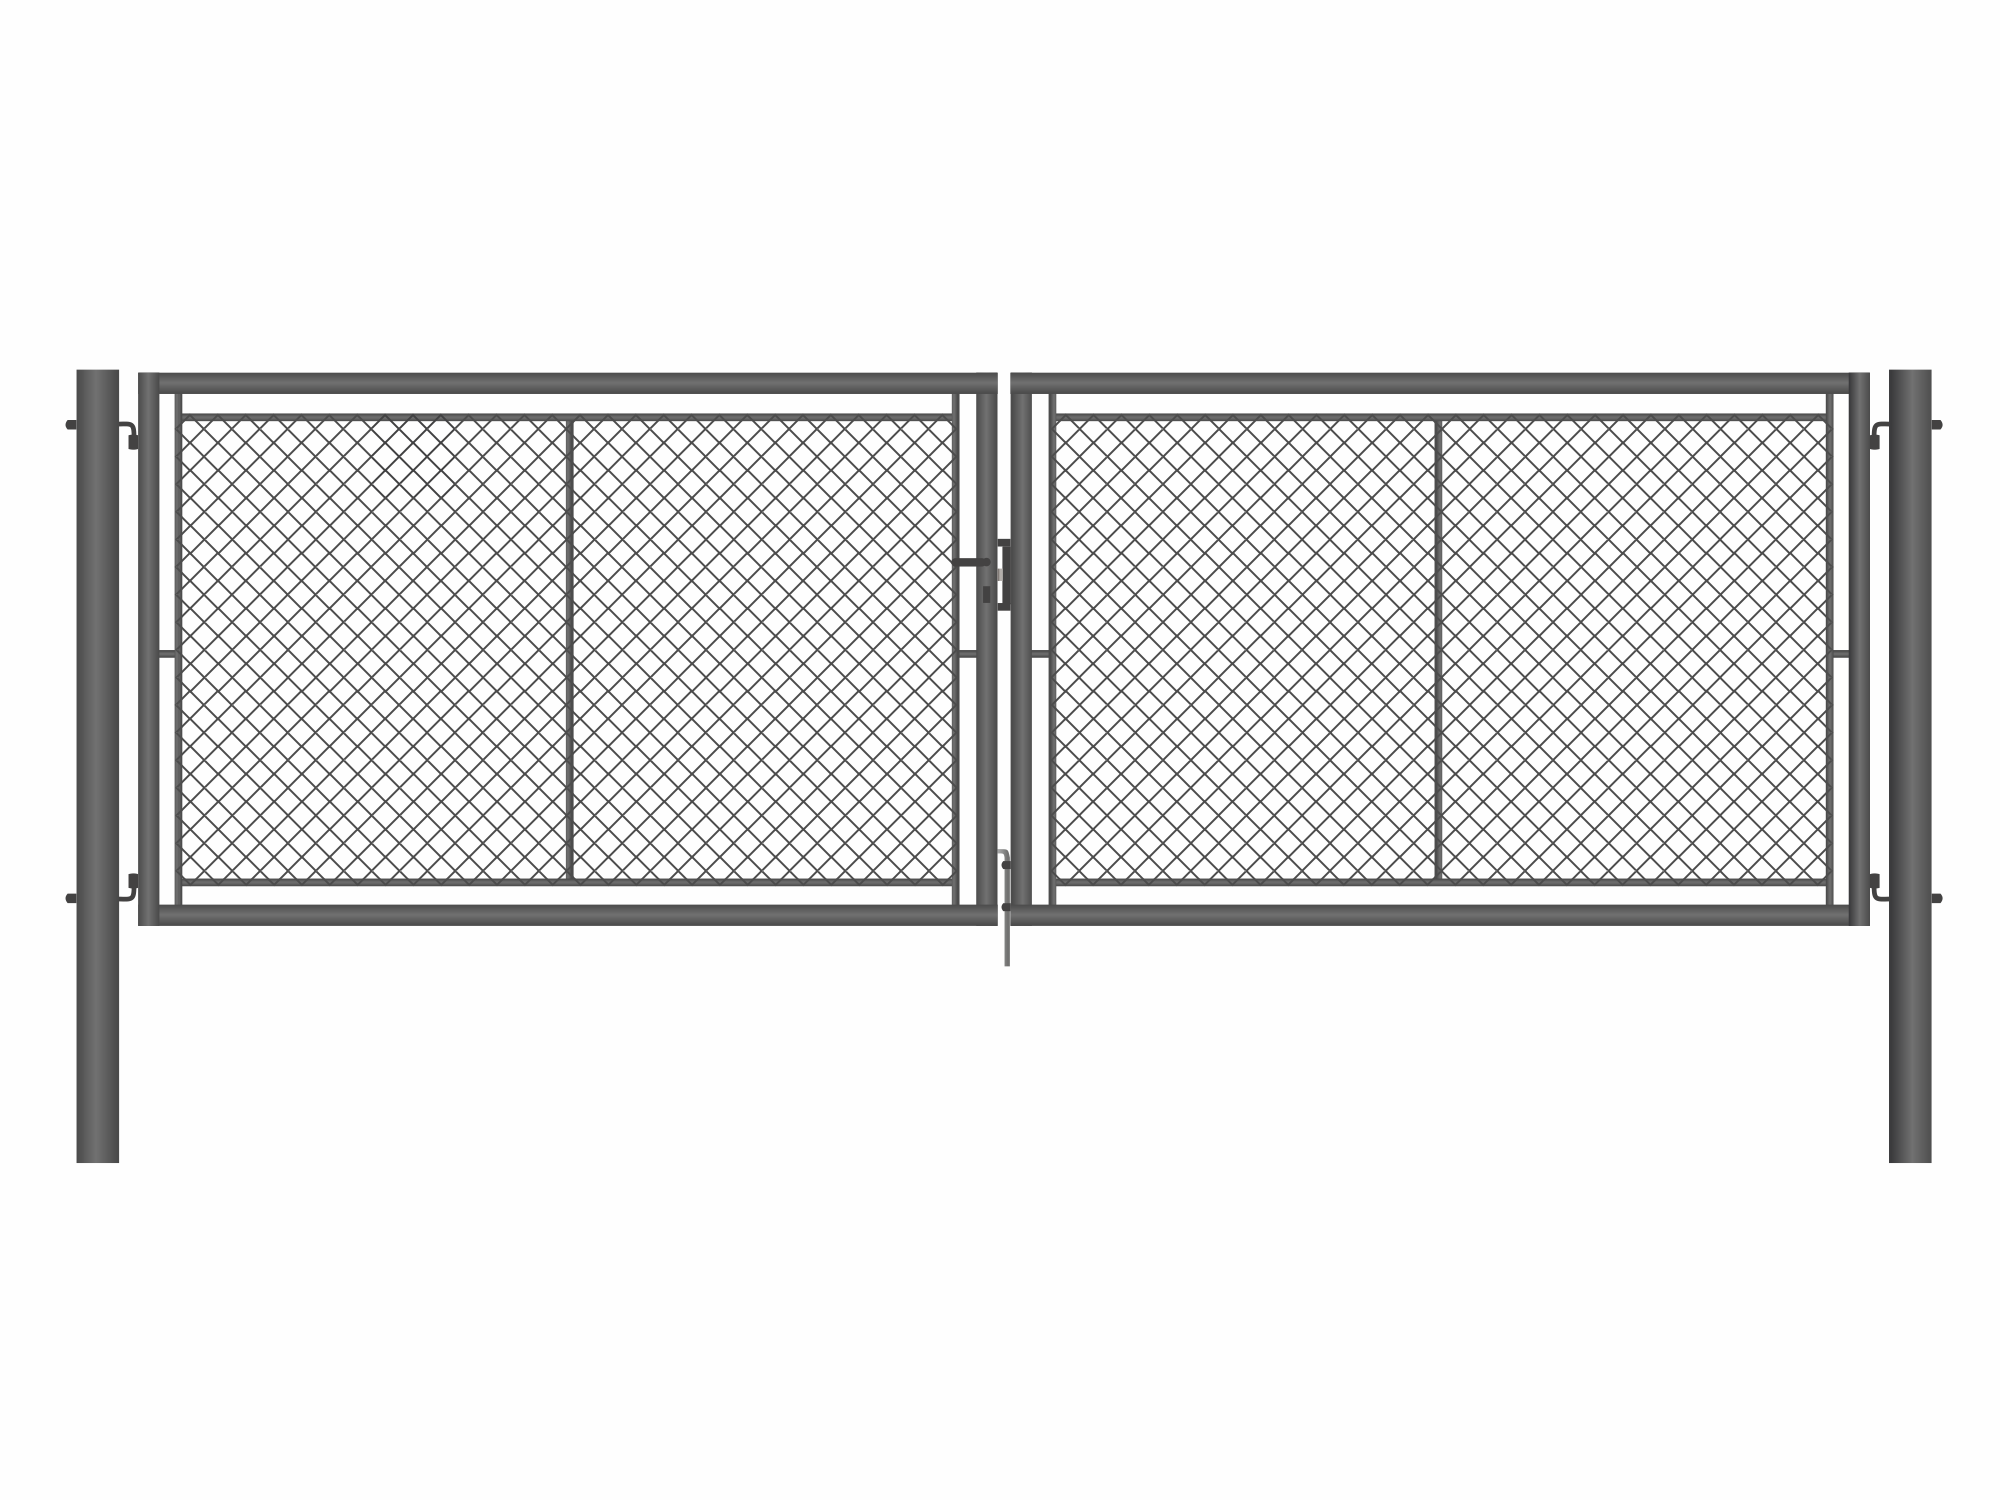 Brána zahradní dvoukřídlá antracit, výška 120 x 500 cm, FAB, s výplní klasického pletiva